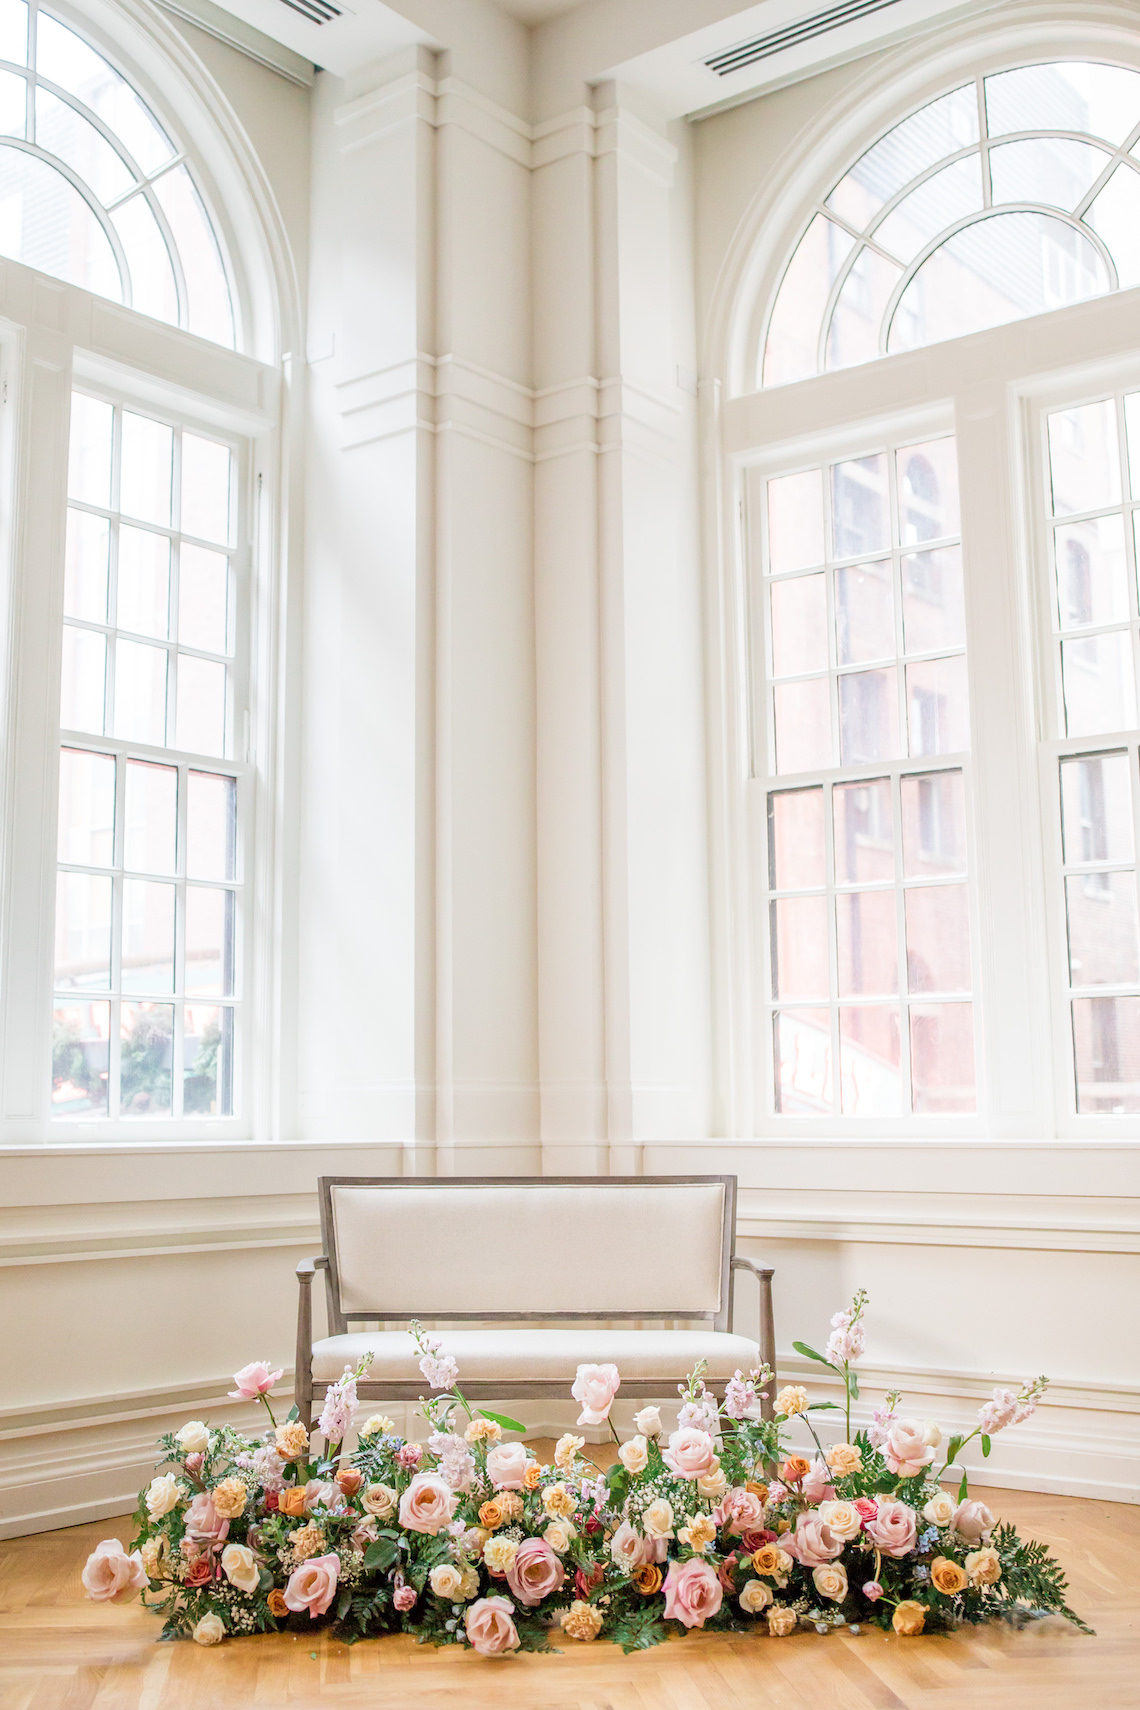 Hotel Noelle lleno de flores Inspiración para bodas en interiores - Krista Joy Photography - Reflexiones nupciales 25